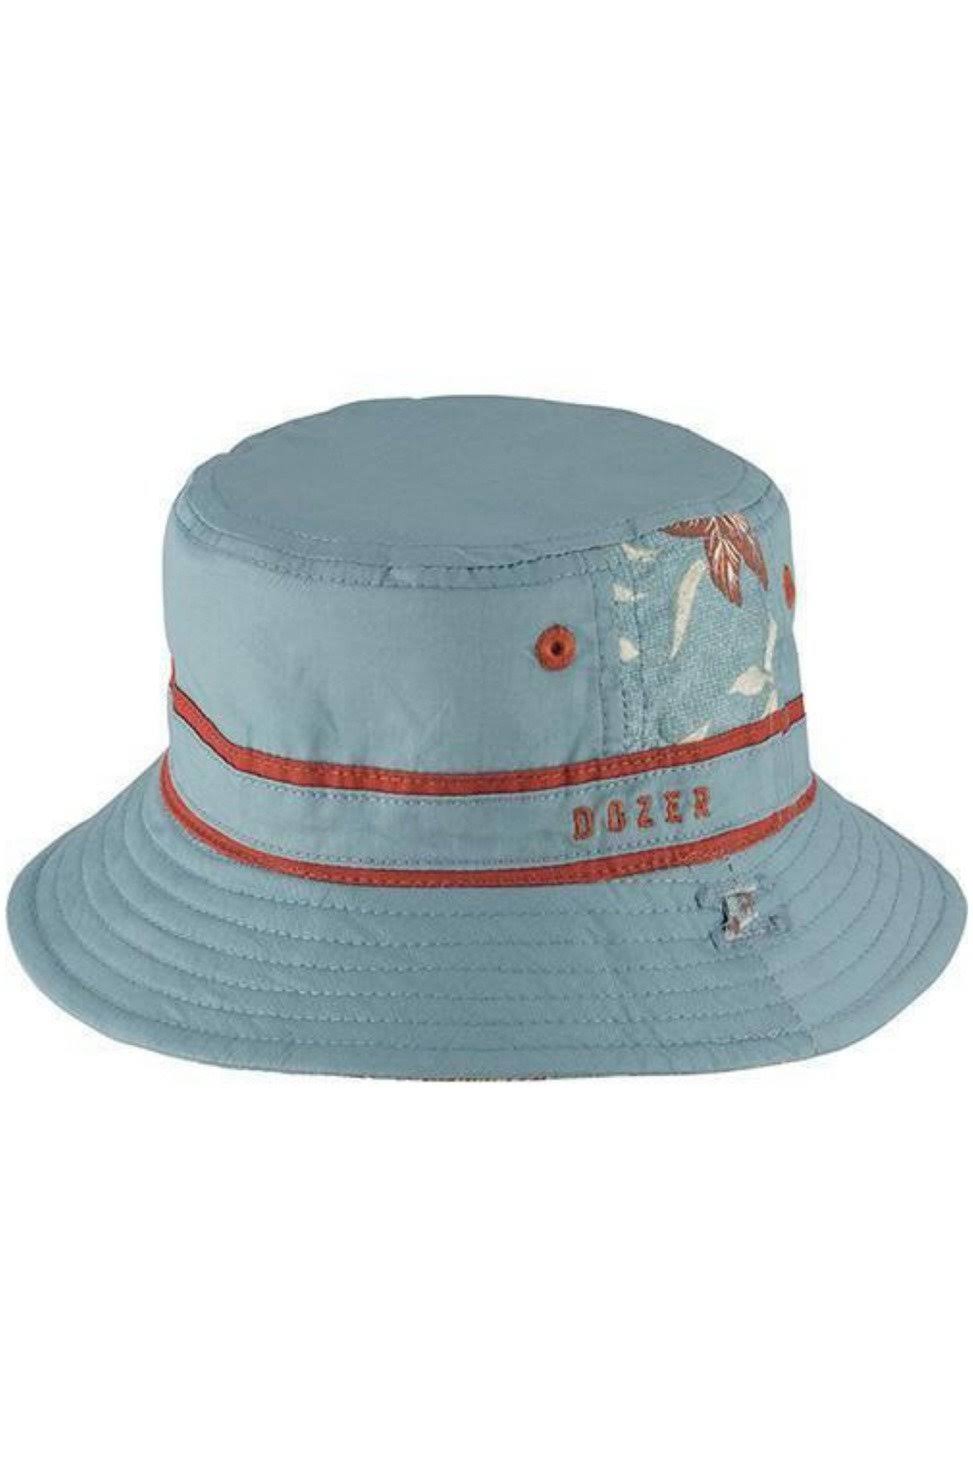 Dozer - Baby Bucket Hat - Broden Blue Cotton Small (0-12m)